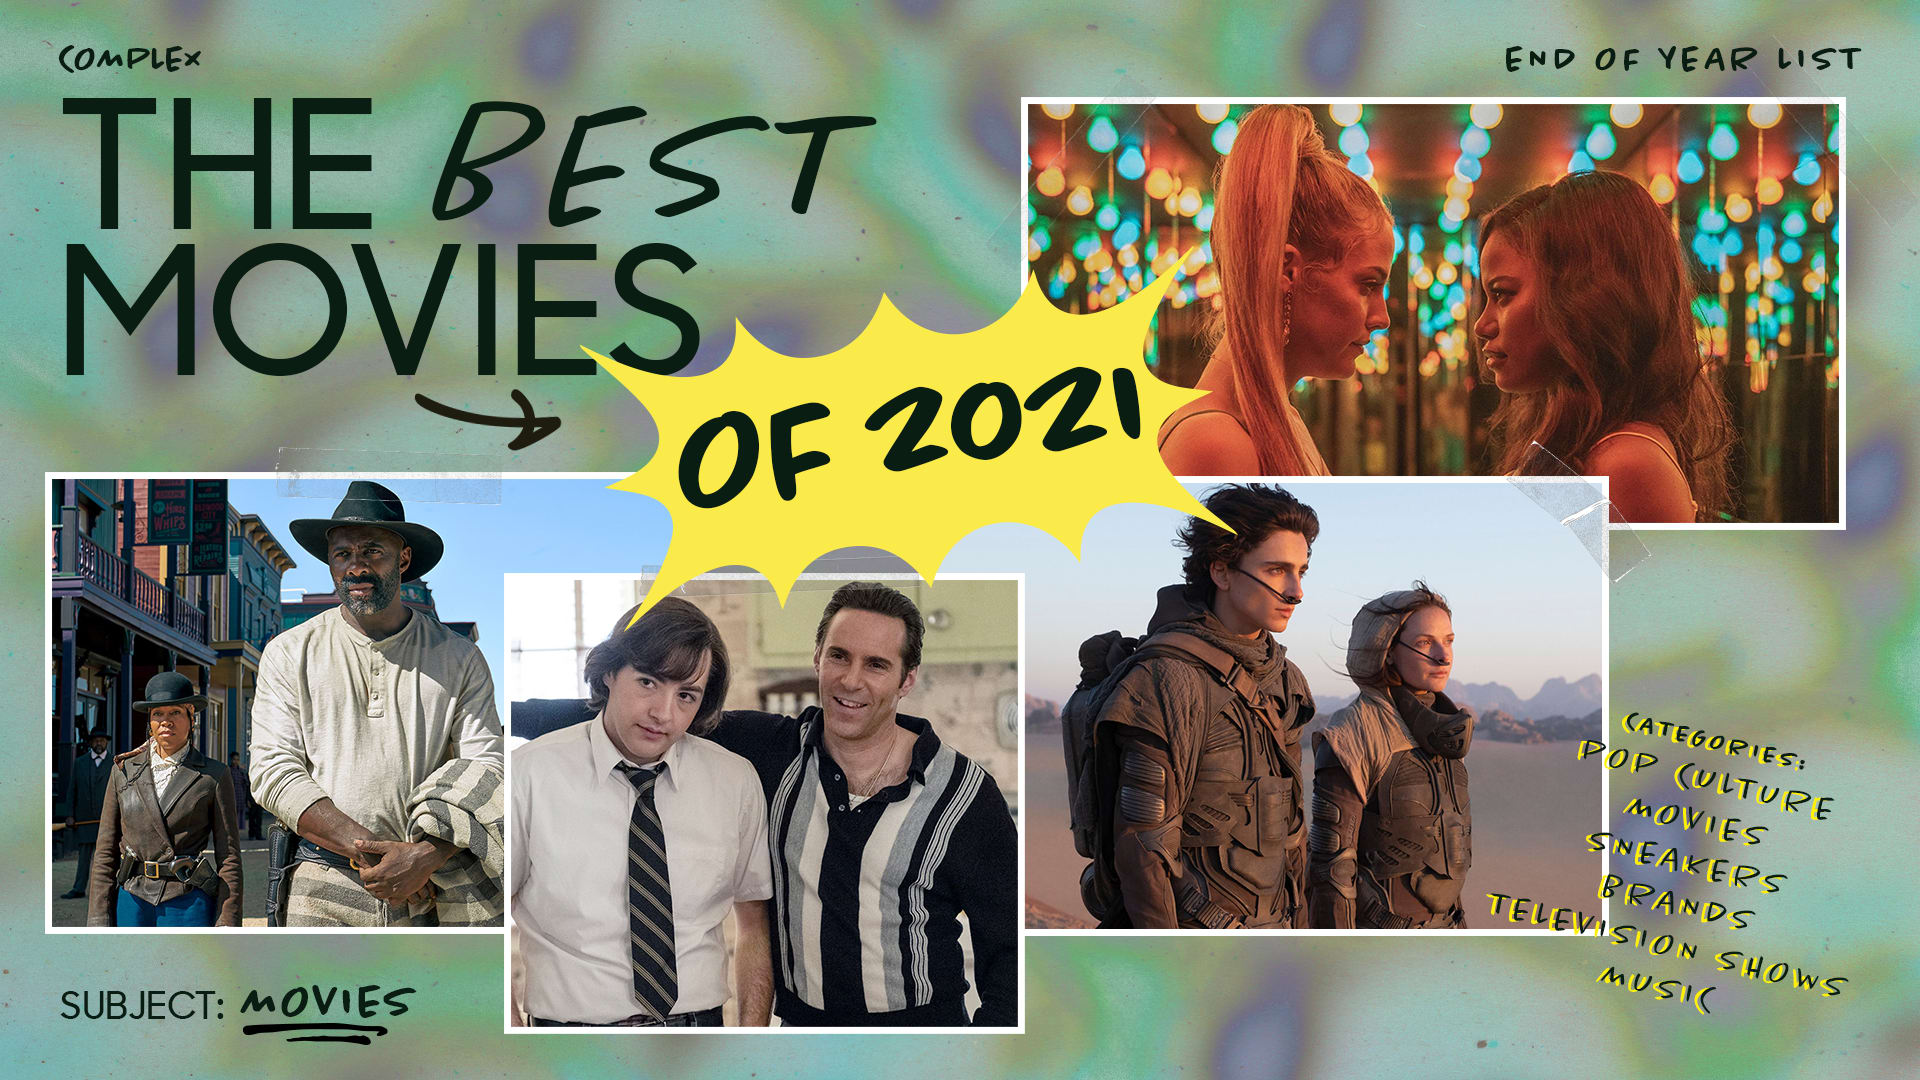 2021 best movies